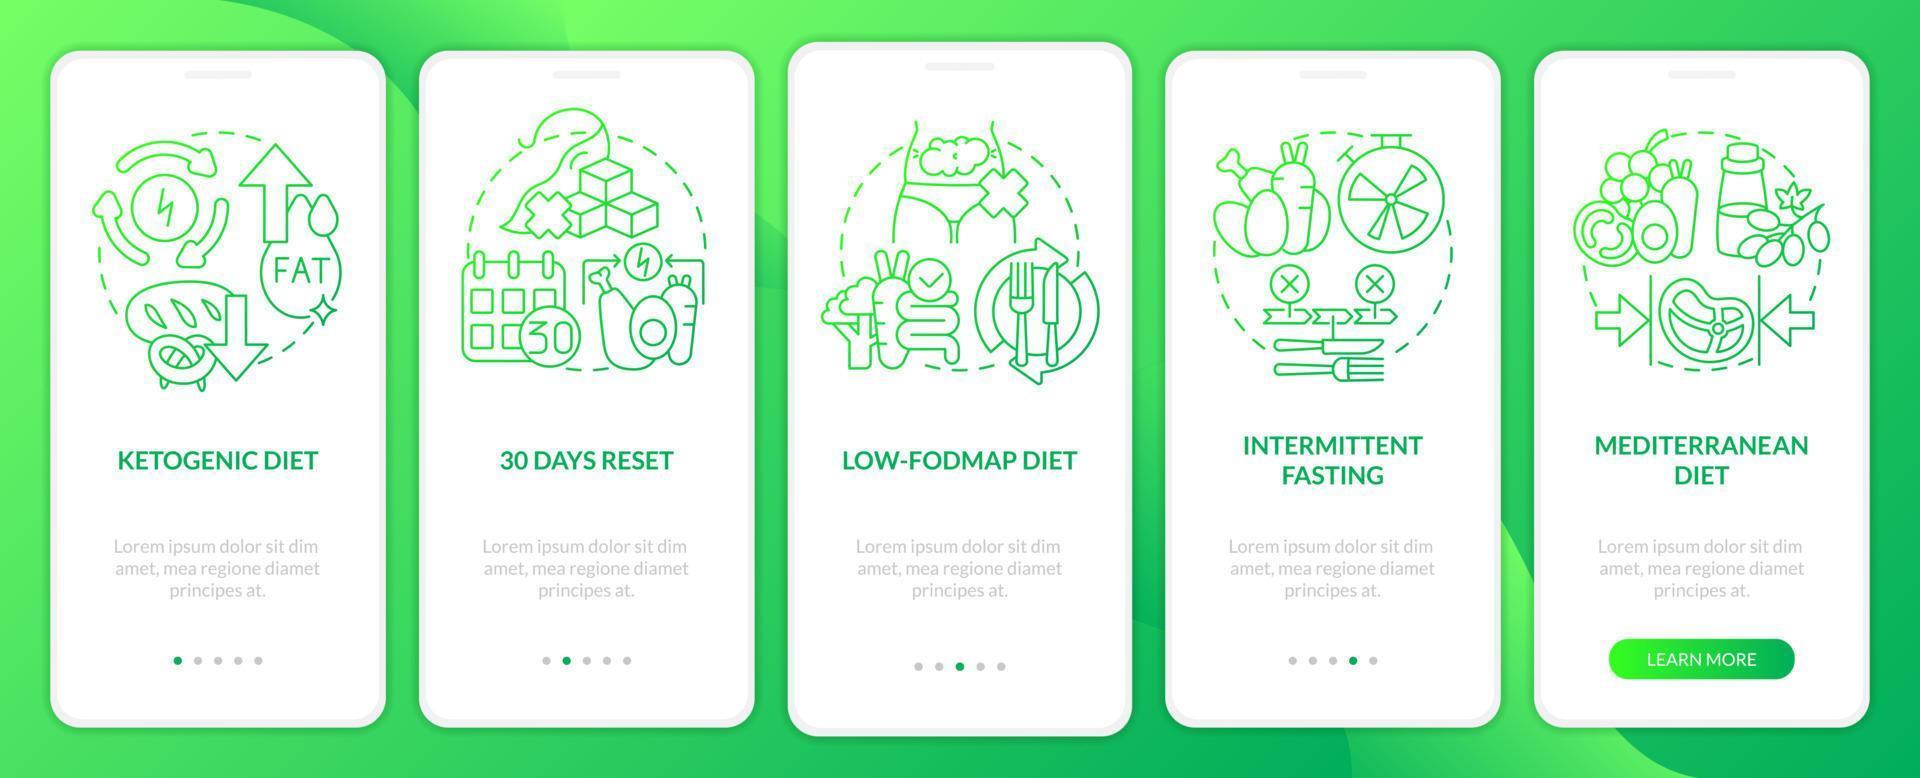 schermo dell'app mobile onboarding gradiente verde diete alla moda. nutrizione dettagliata 5 passaggi pagine di istruzioni grafiche con concetti lineari. ui, ux, modello gui. vettore